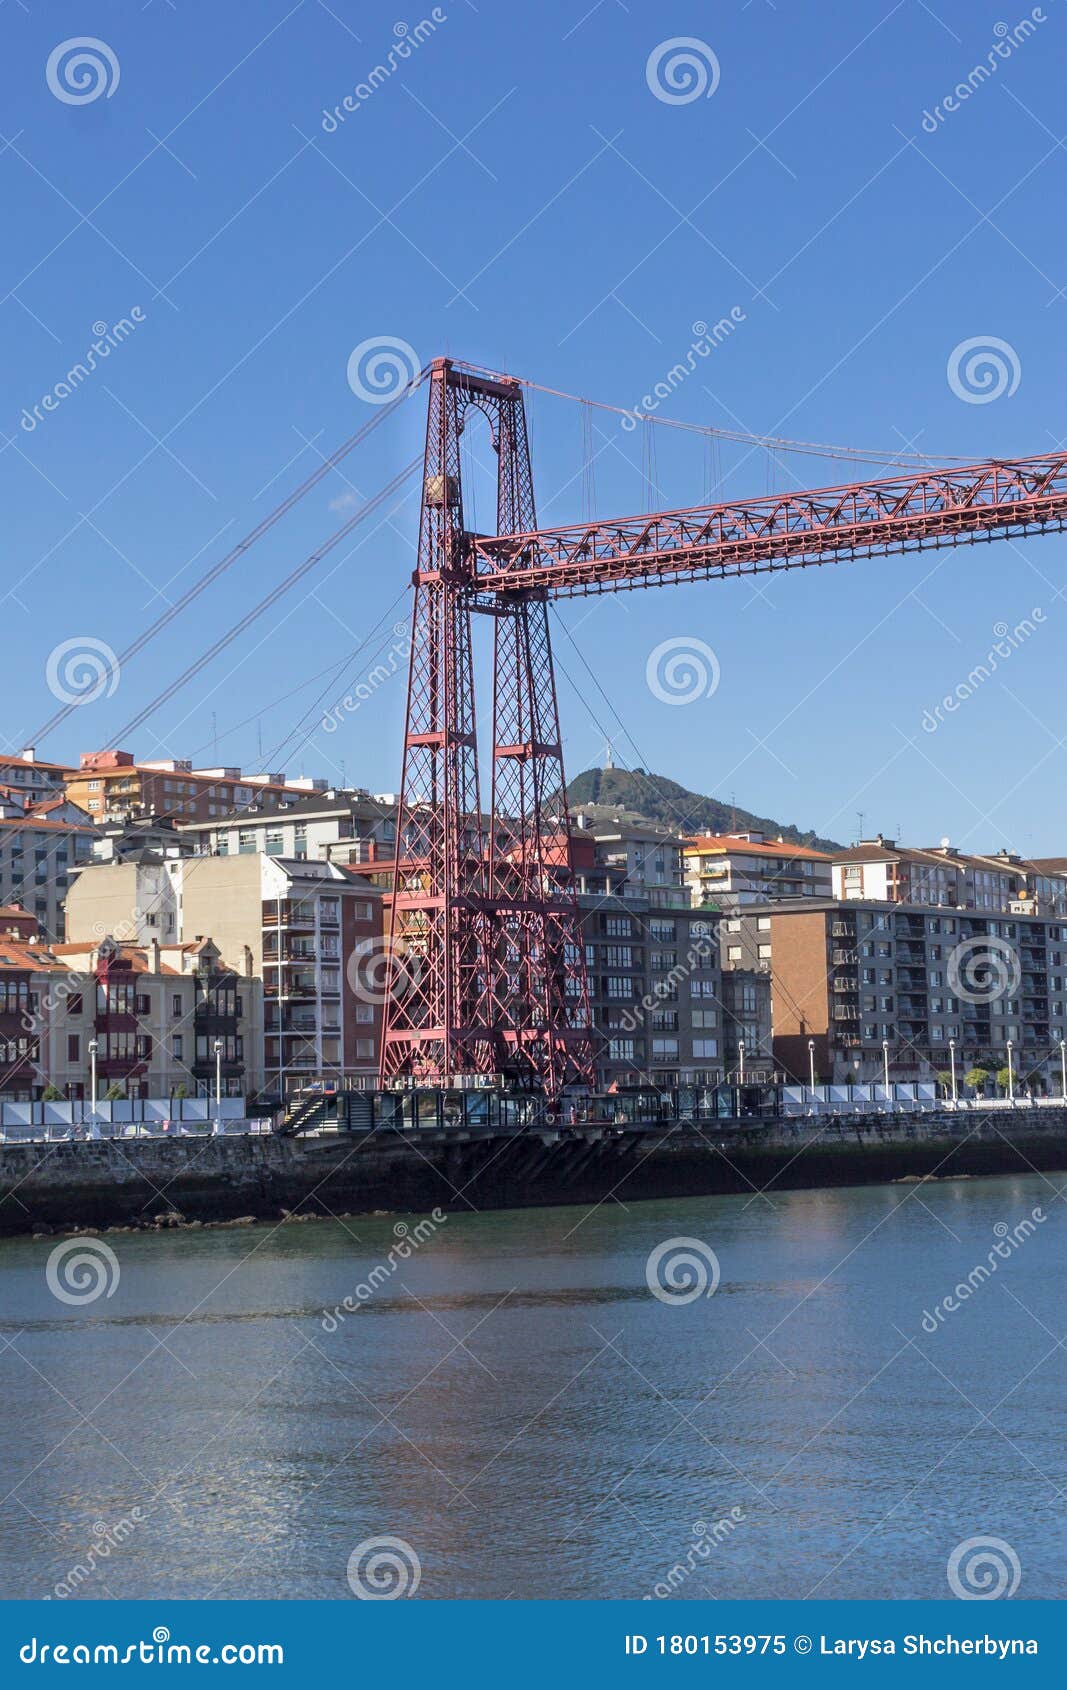 biscay conveyor suspension bridge in the basque country